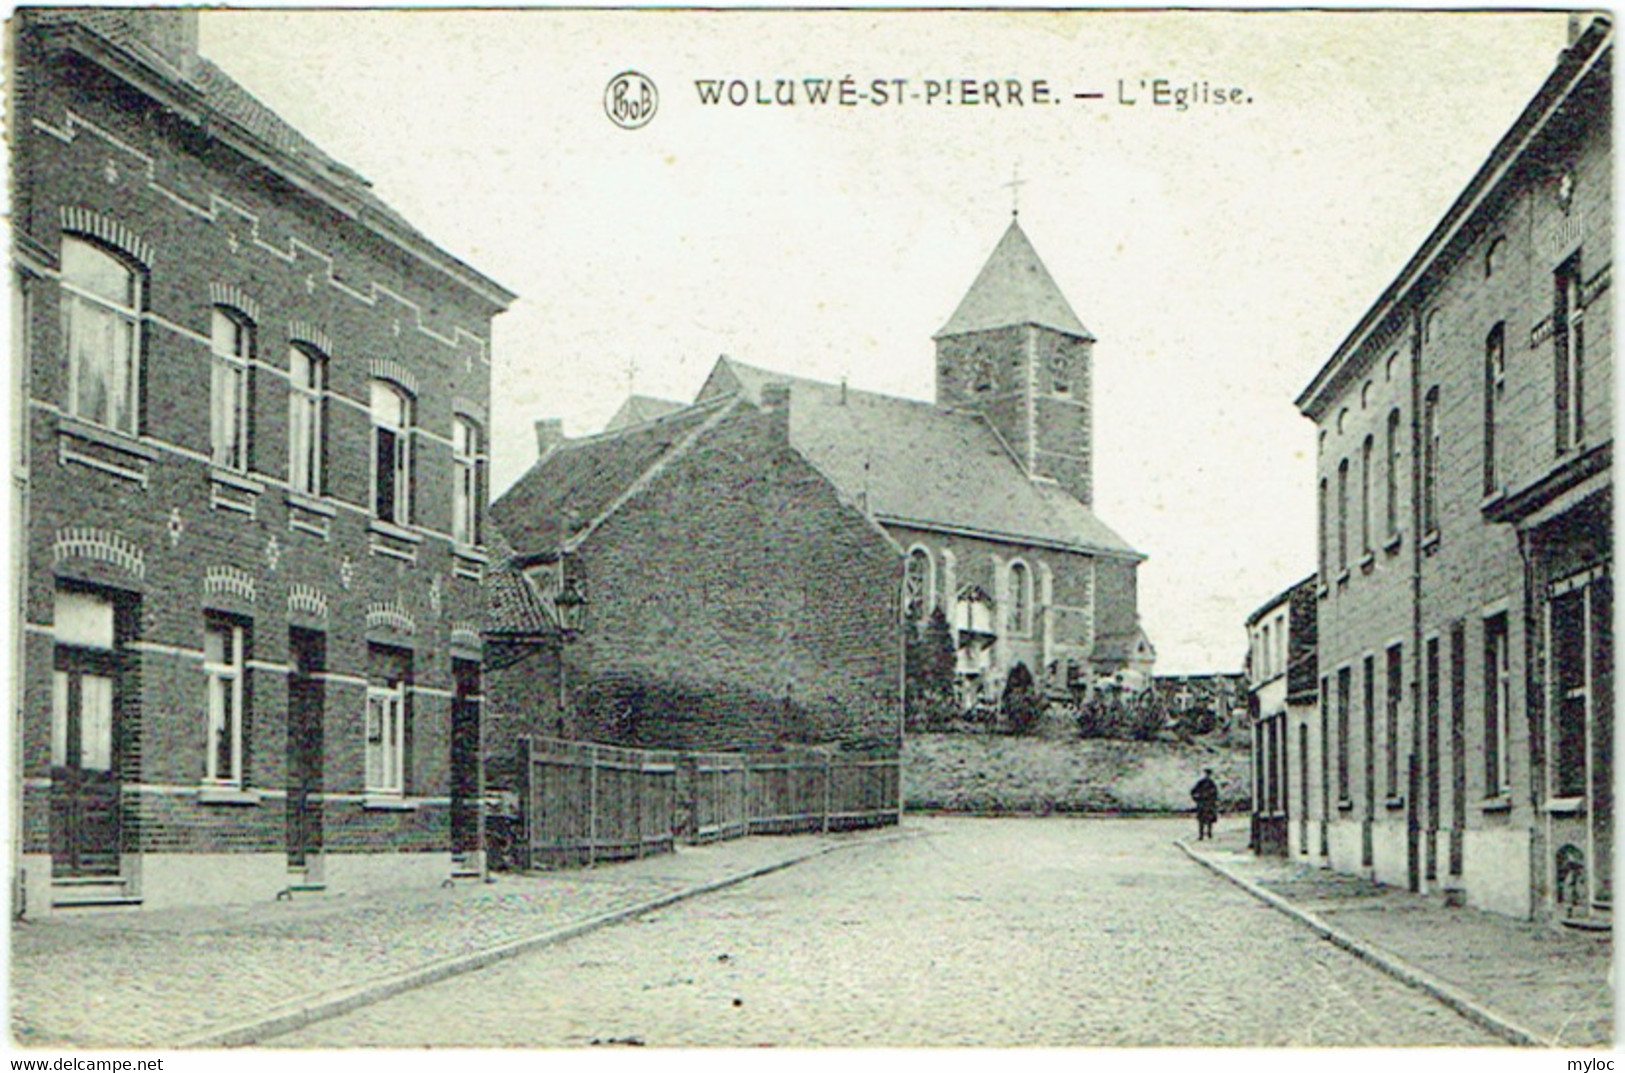 Woluwé-St-Pierre. Eglise. - St-Pieters-Woluwe - Woluwe-St-Pierre